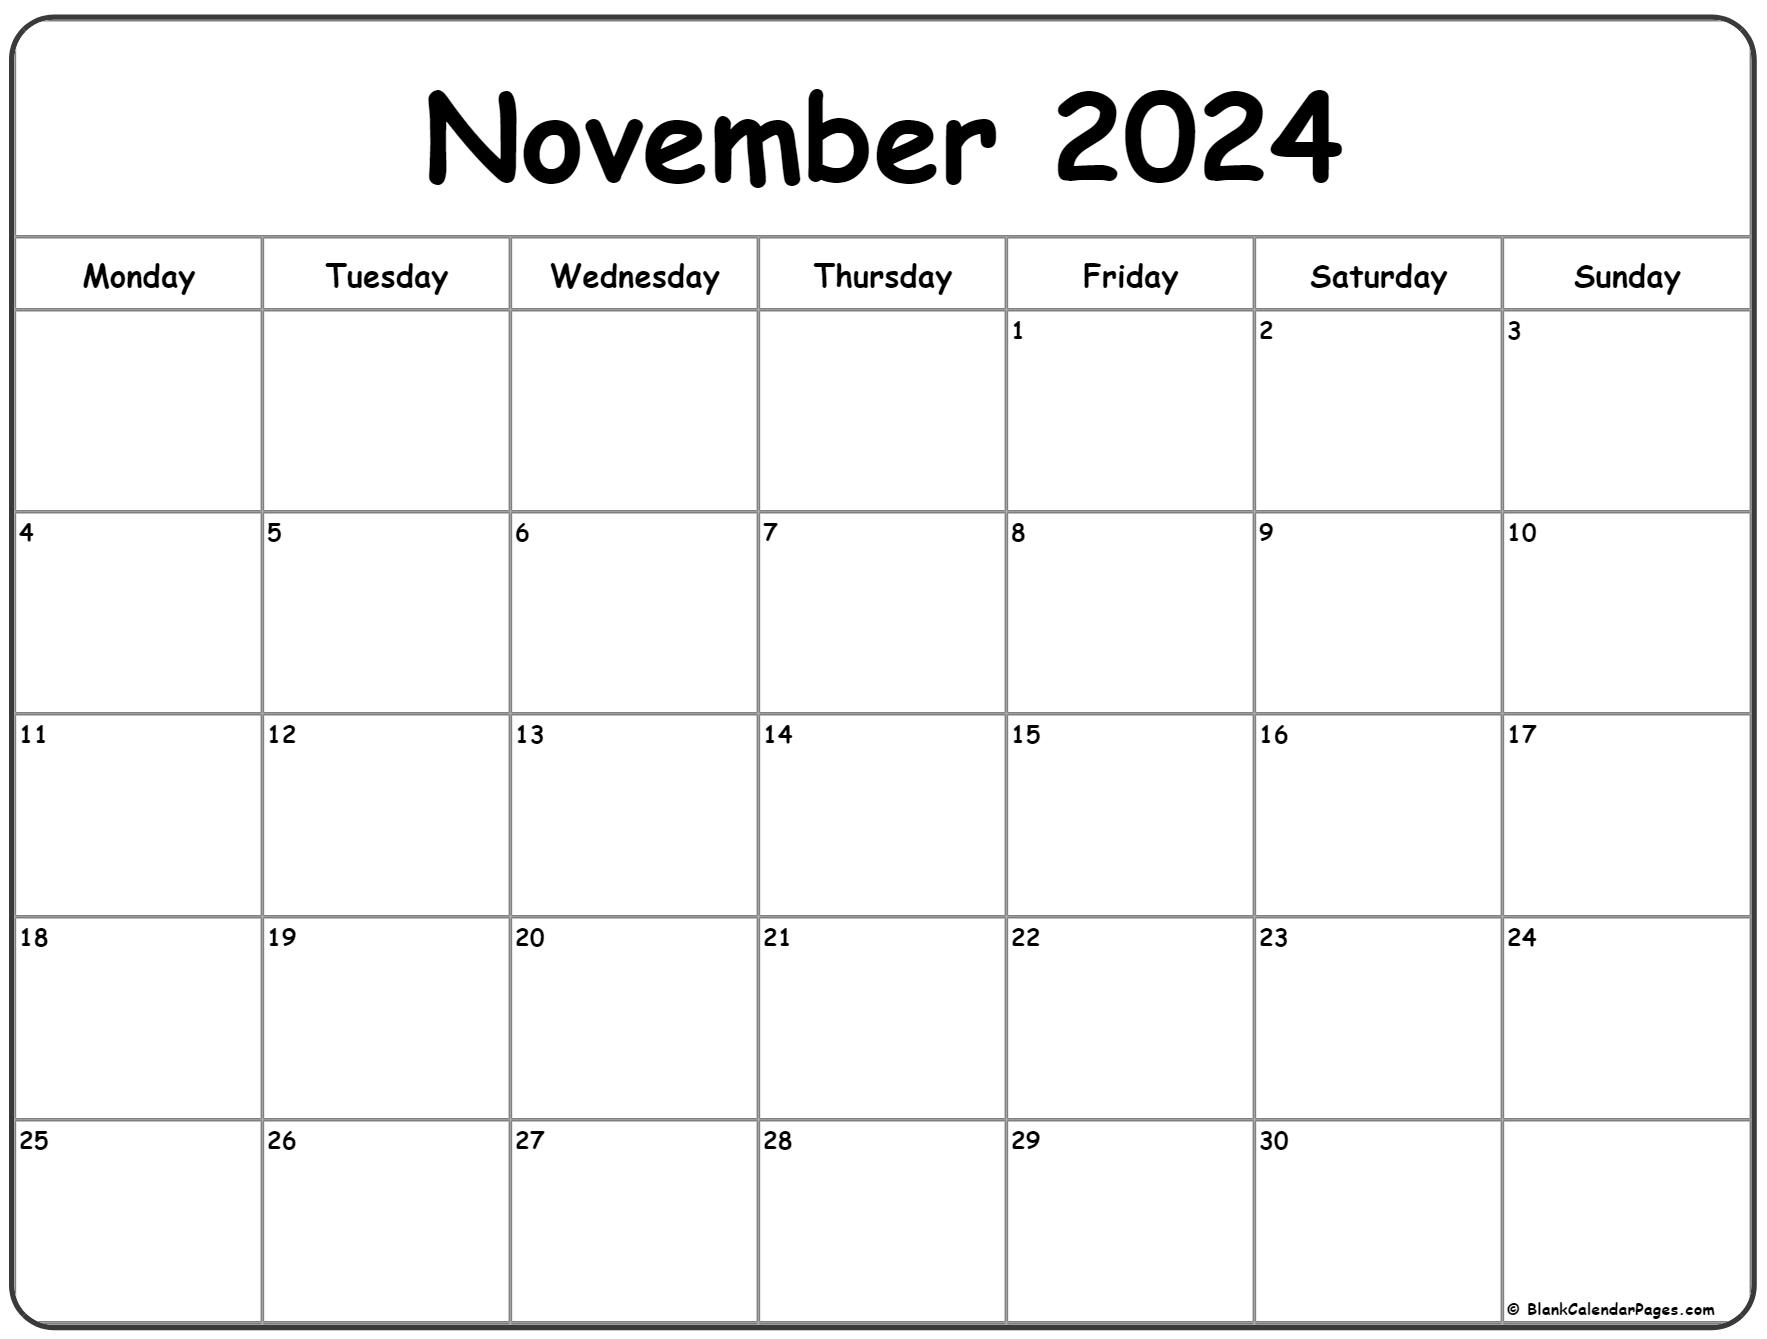 November 2024 Monday Calendar | Monday To Sunday for November Printable Calendar 2024